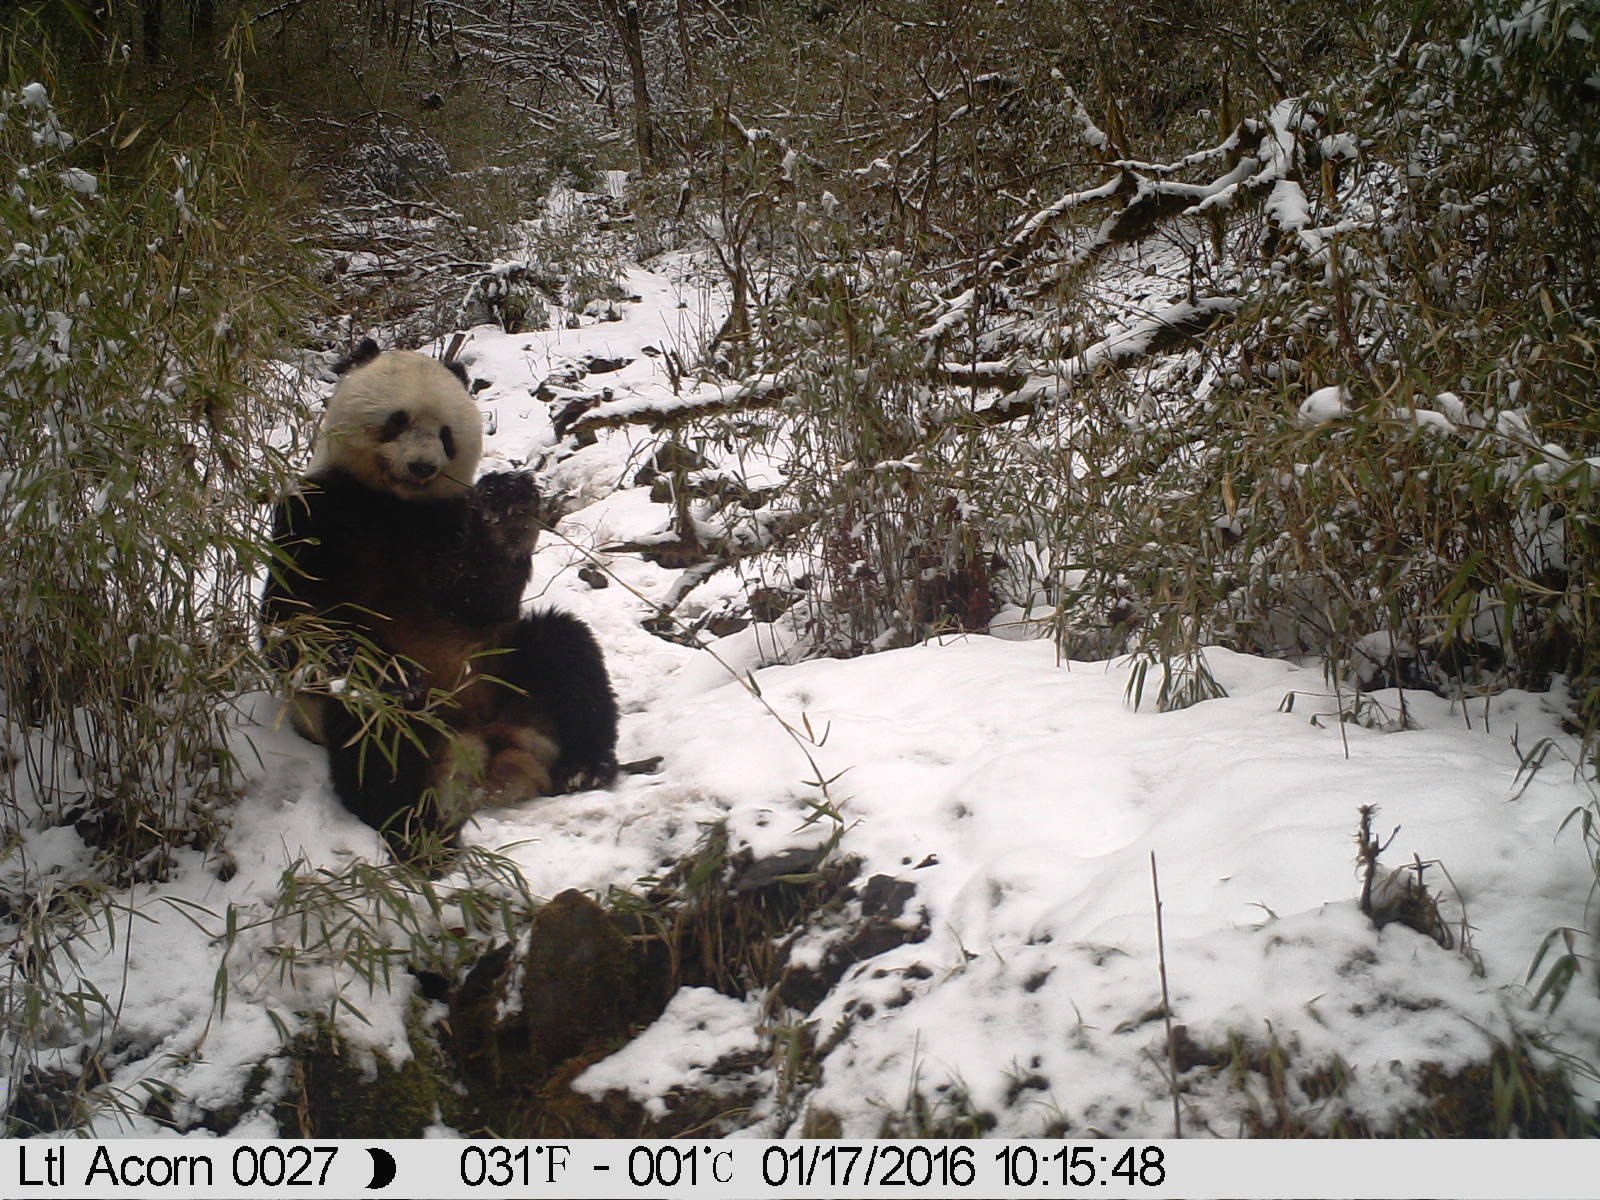 Panda sitting in snow eating bamboo